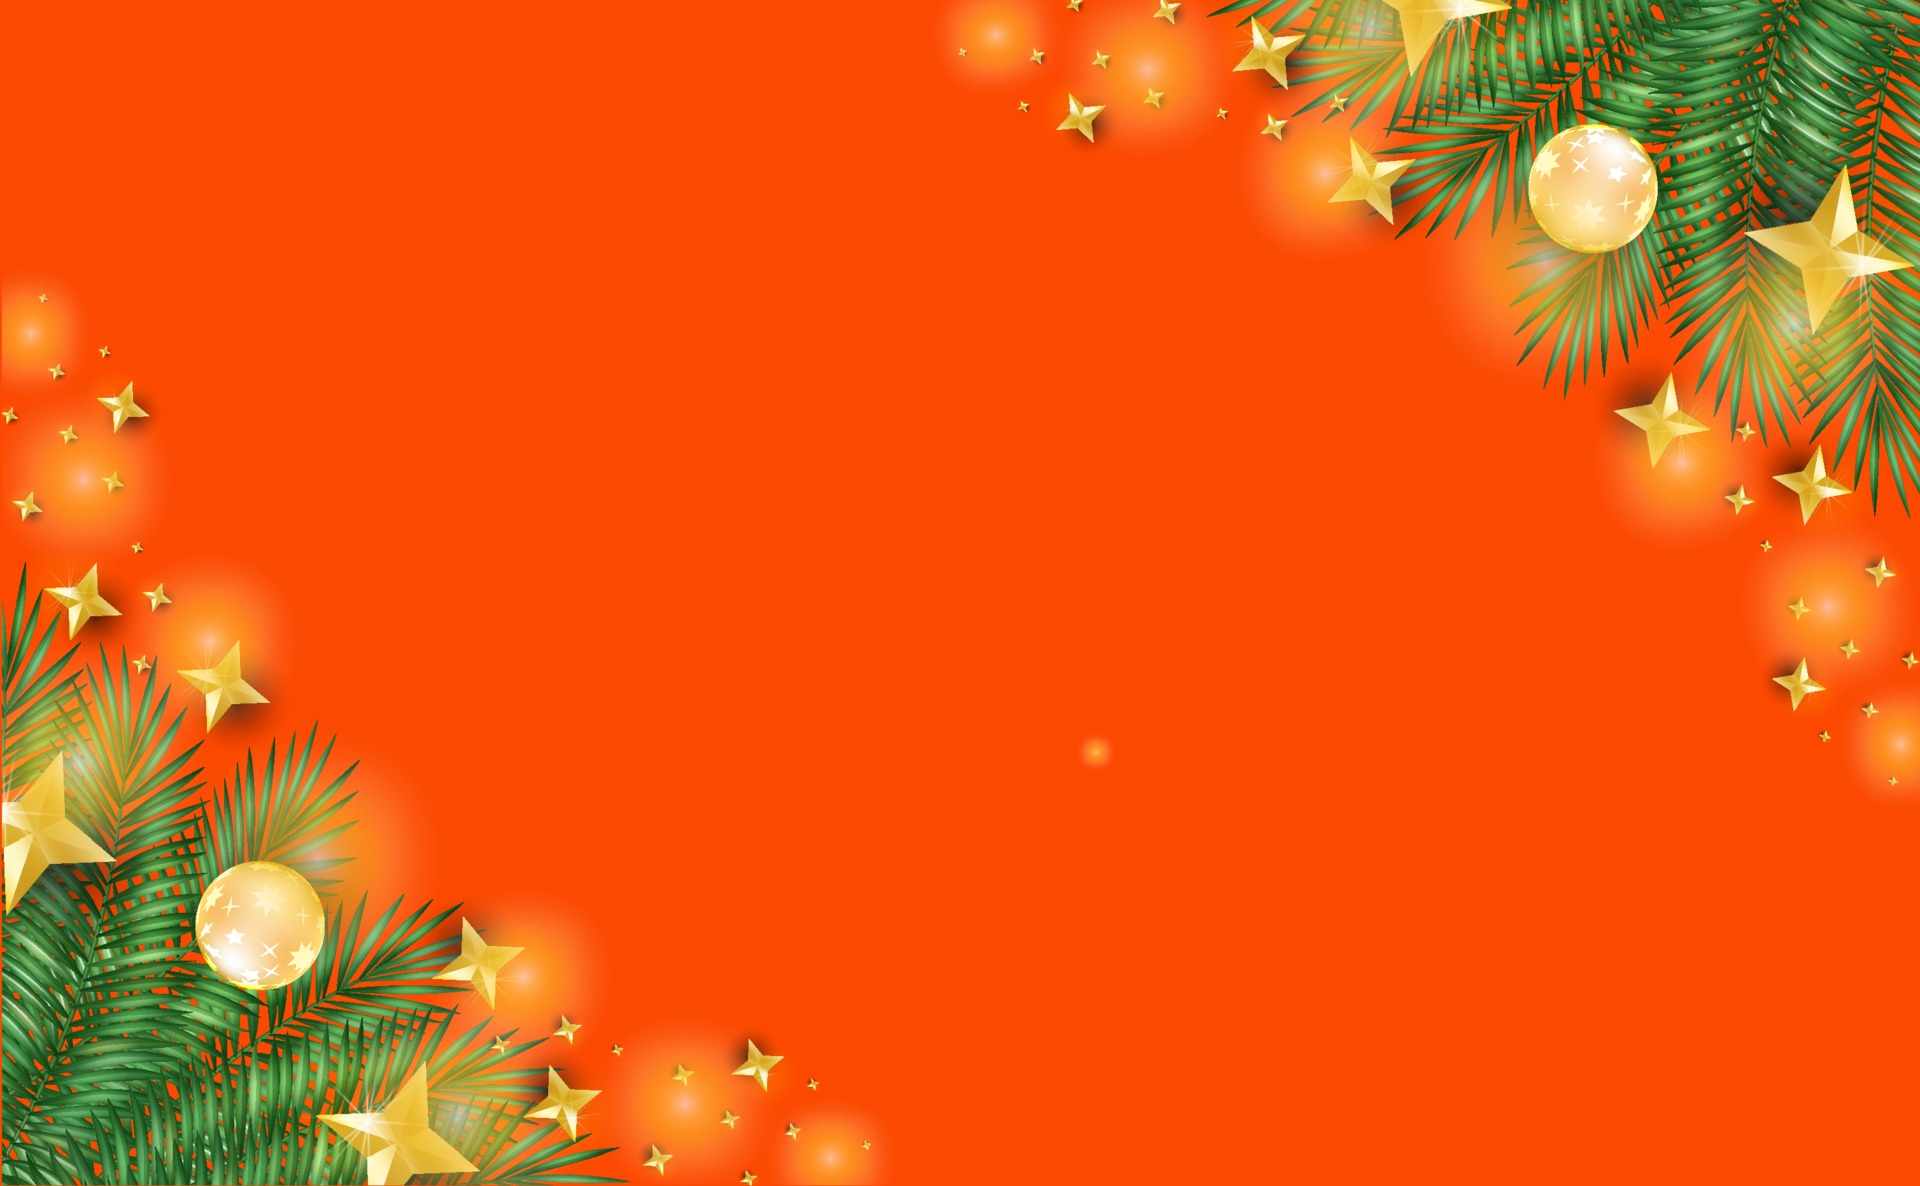 Hình vector nền Giáng sinh màu cam sẽ mang đến cho bạn không gian ấm áp và vui vẻ trong mùa lễ hội này. Với bức ảnh này, bạn có thể tùy chỉnh kích thước và sử dụng nó làm nền cho thiết kế của mình. Hãy truy cập ngay để khám phá những mẫu hình vector Giáng sinh màu cam đầu tiên.